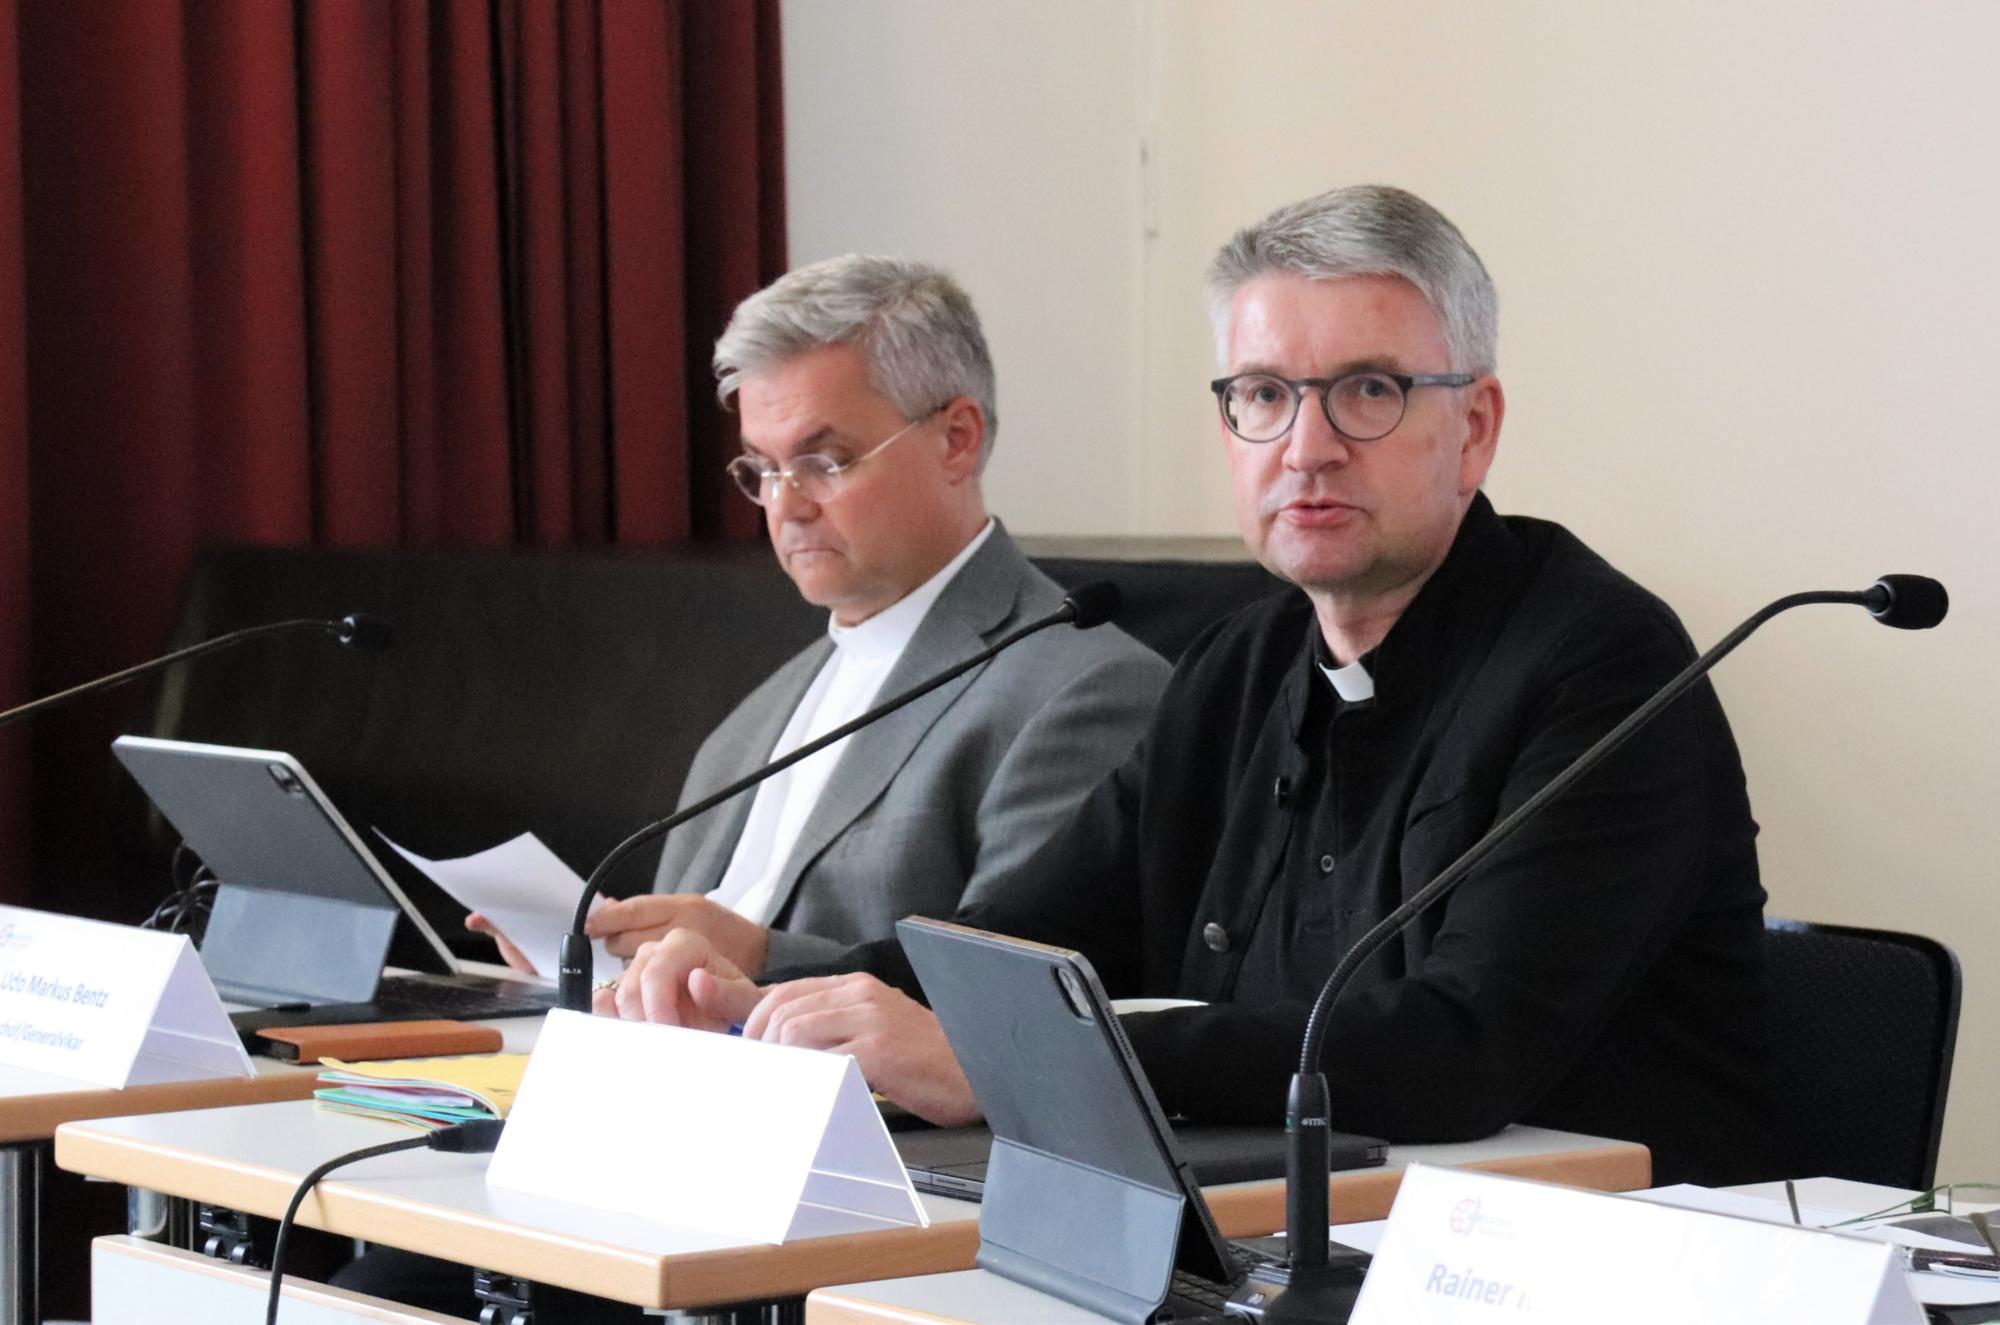 Bischof Peter Kohlgraf und Weihbischof Dr. Udo Markus Bentz (von rechts) bei der Sitzung des Diözesankirchensteuerrats (c) Bistum Mainz/Hoffmann